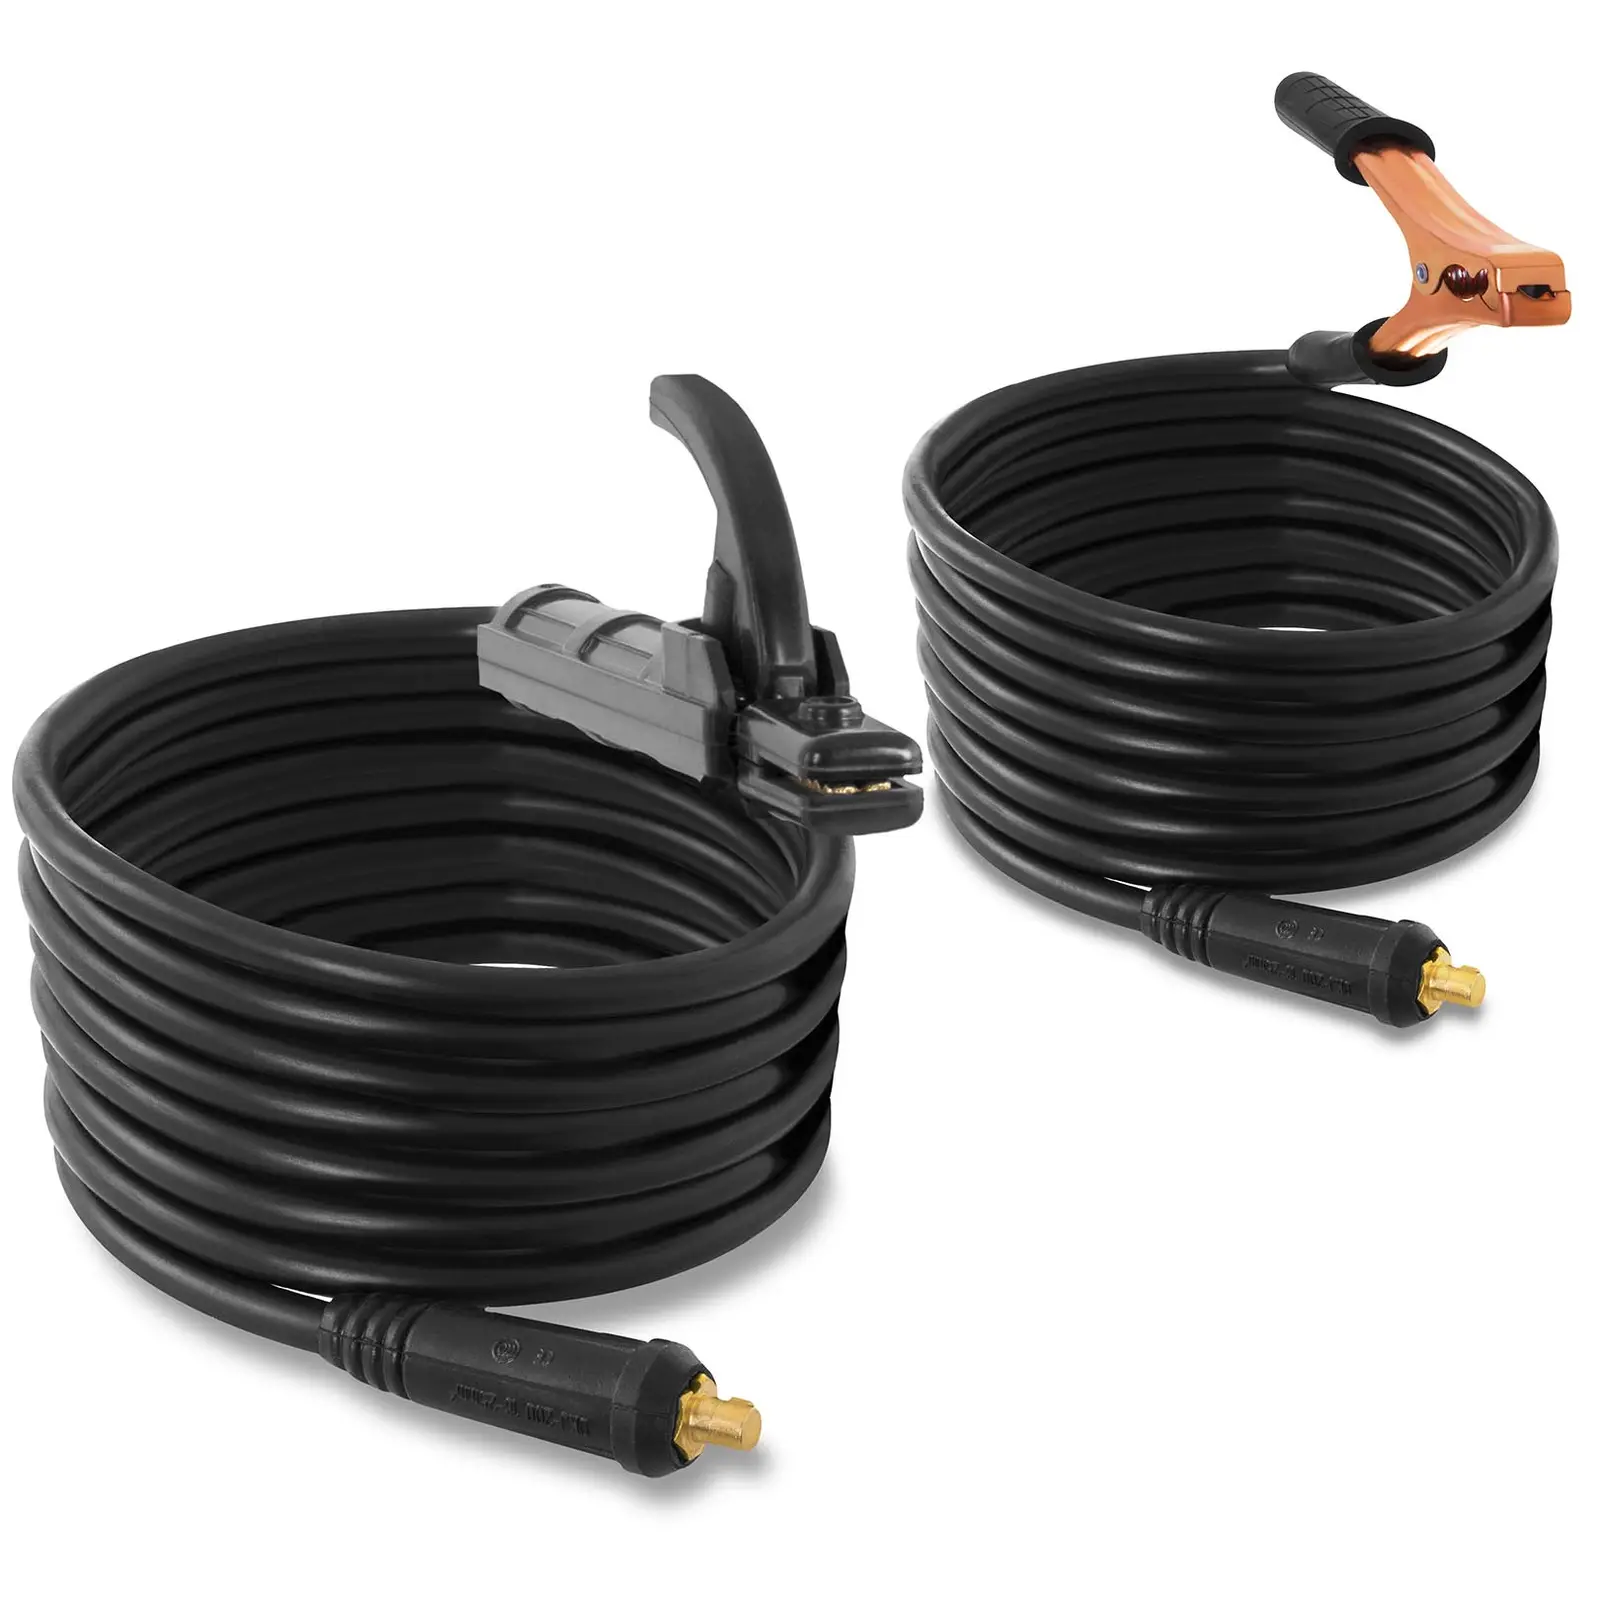 Sett: Elektrodesveiser - sett med sveisehansker - 250 A - 8 m kabel - hot-start